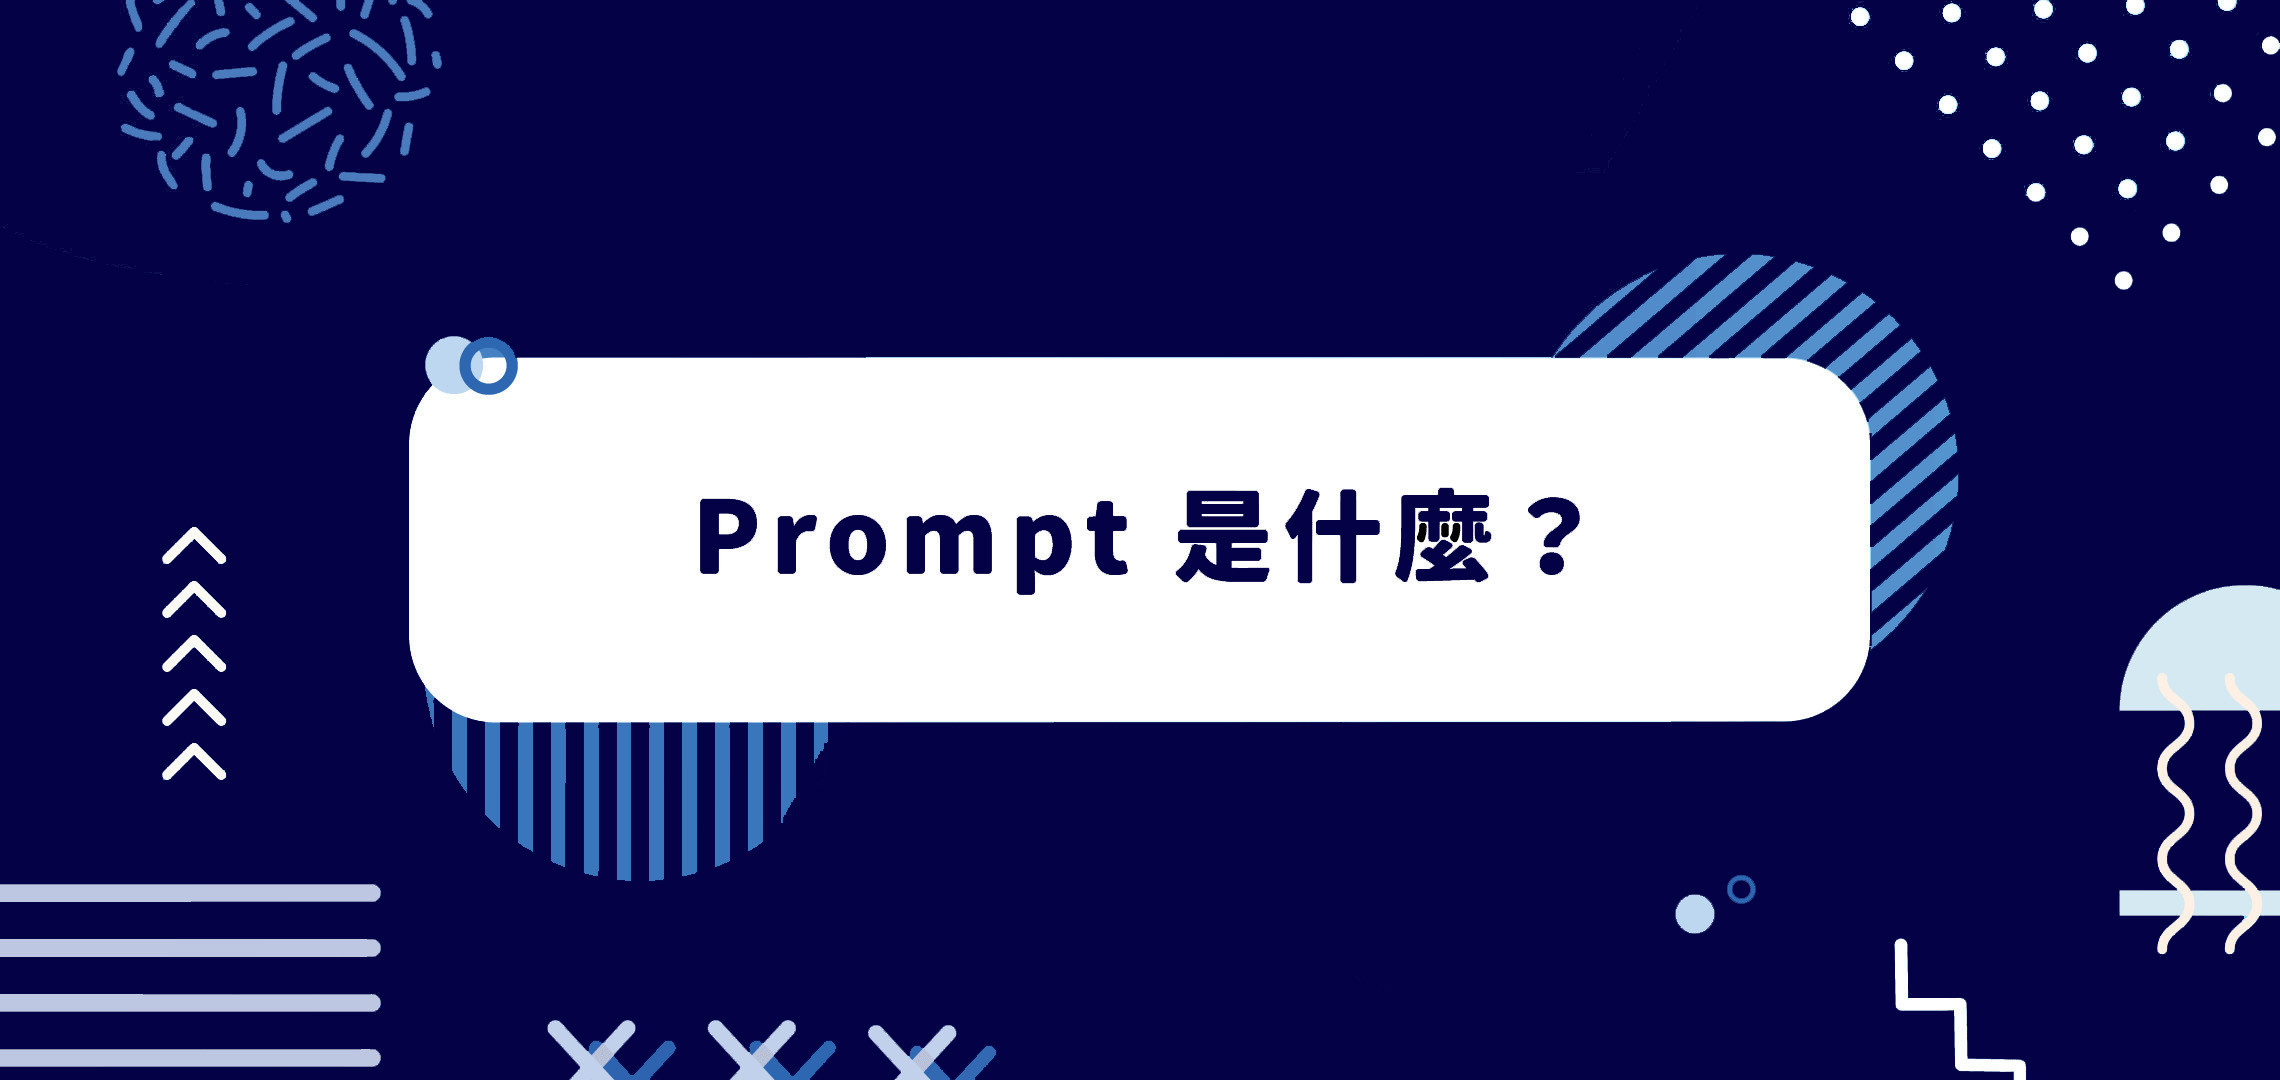 如何成為專業 AI 詠唱師？ PromptPerfect 幫助你將提示詞更完美！一、Prompt 是什麼？